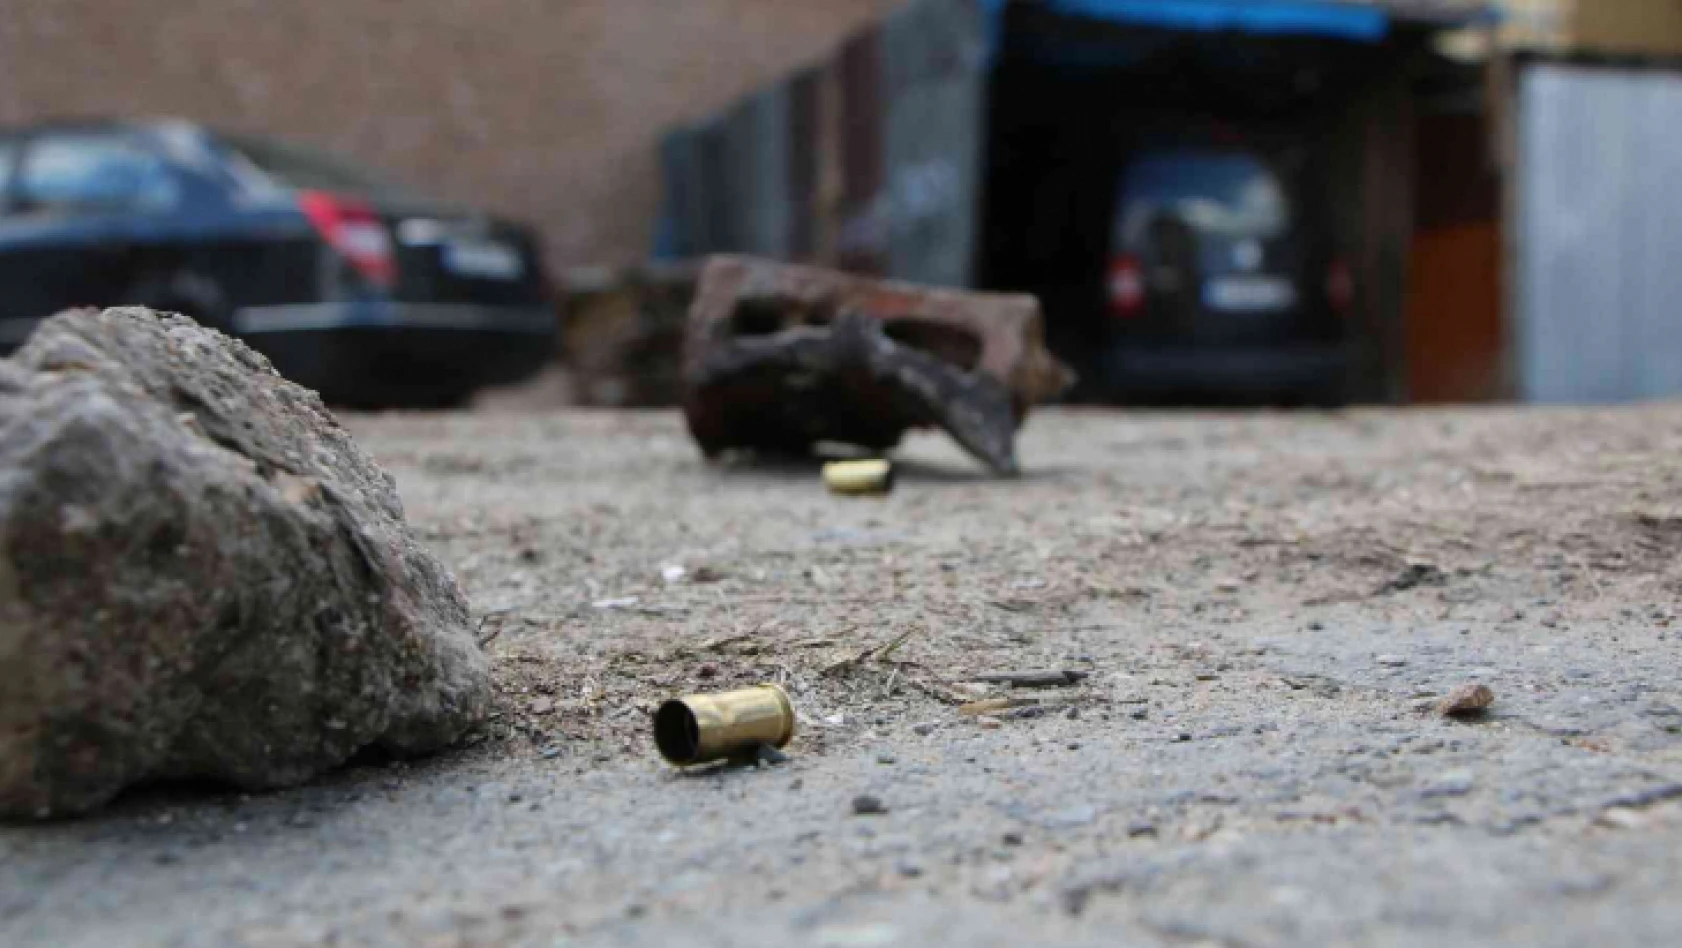 Elazığ'da silahlı kavga: 1 yaralı